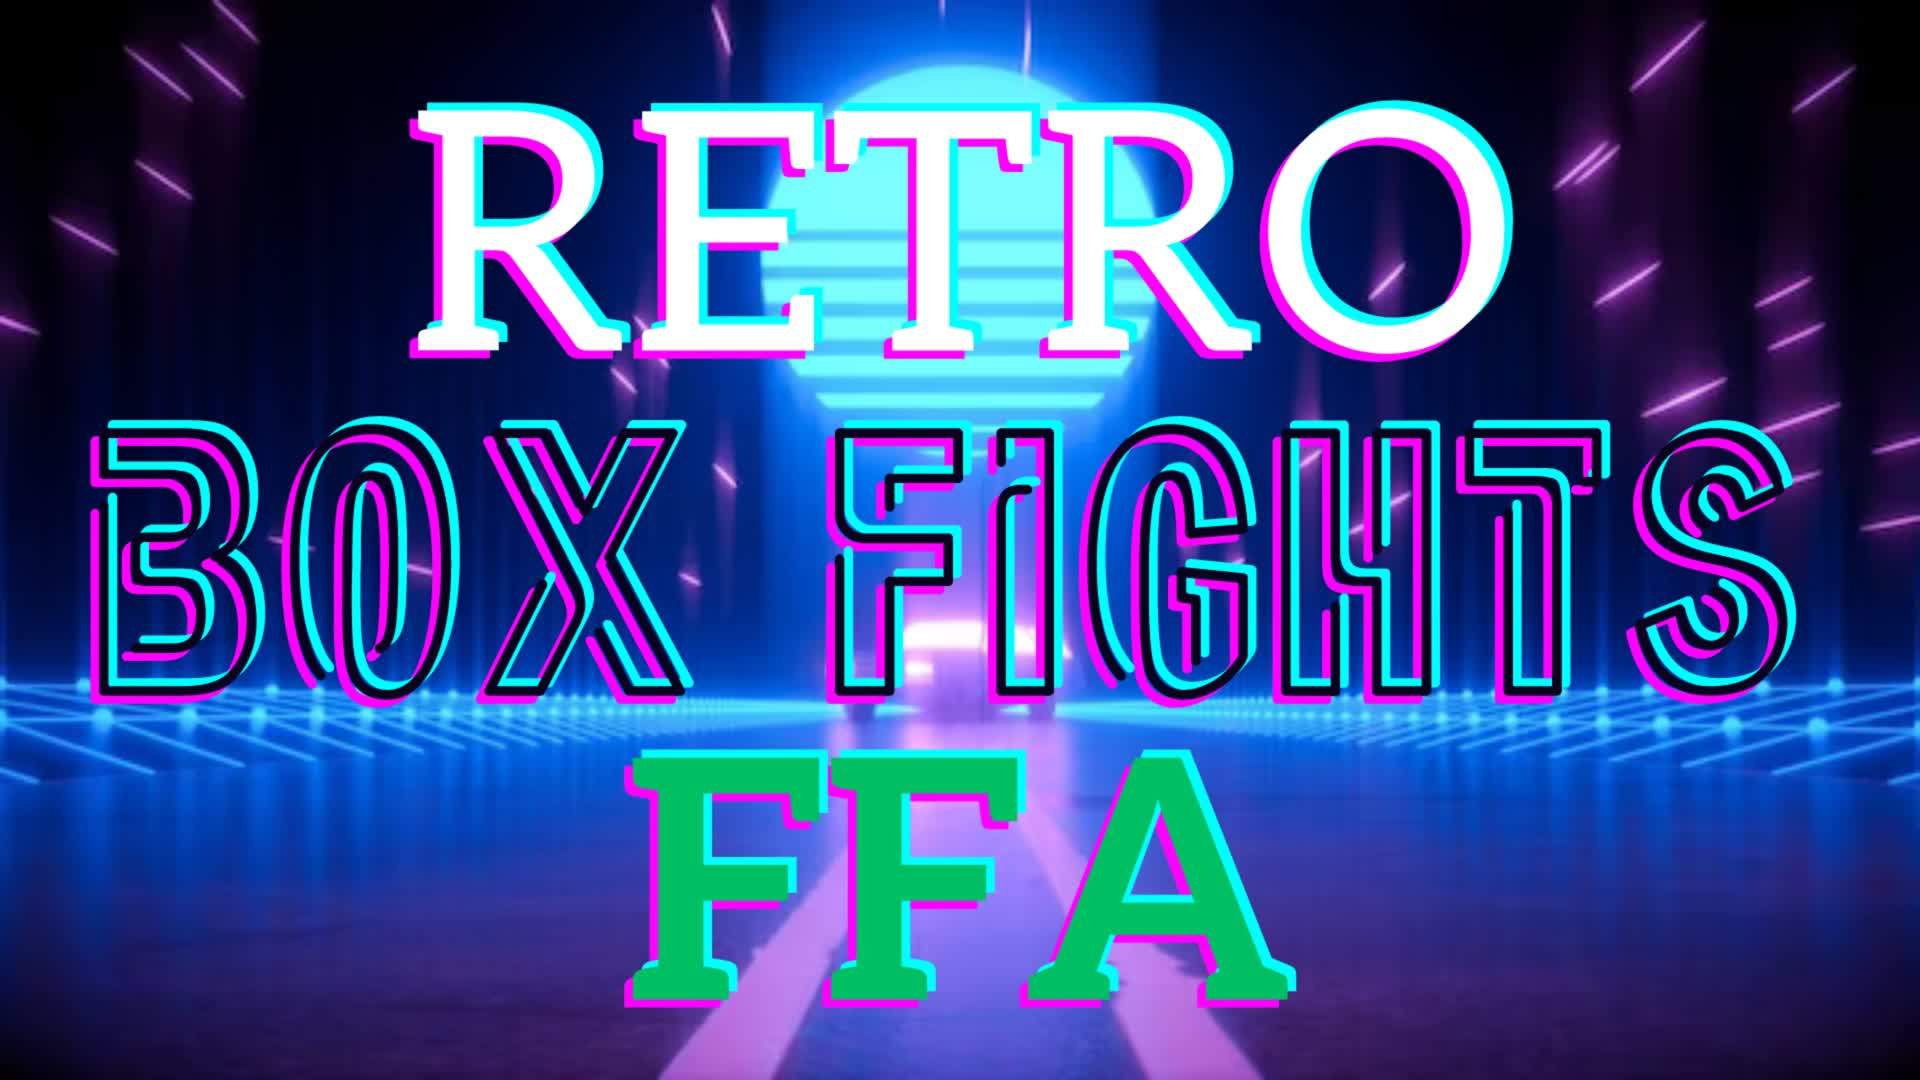 BOX FIGHT FFA - Fortnite Creative Map Code - Dropnite